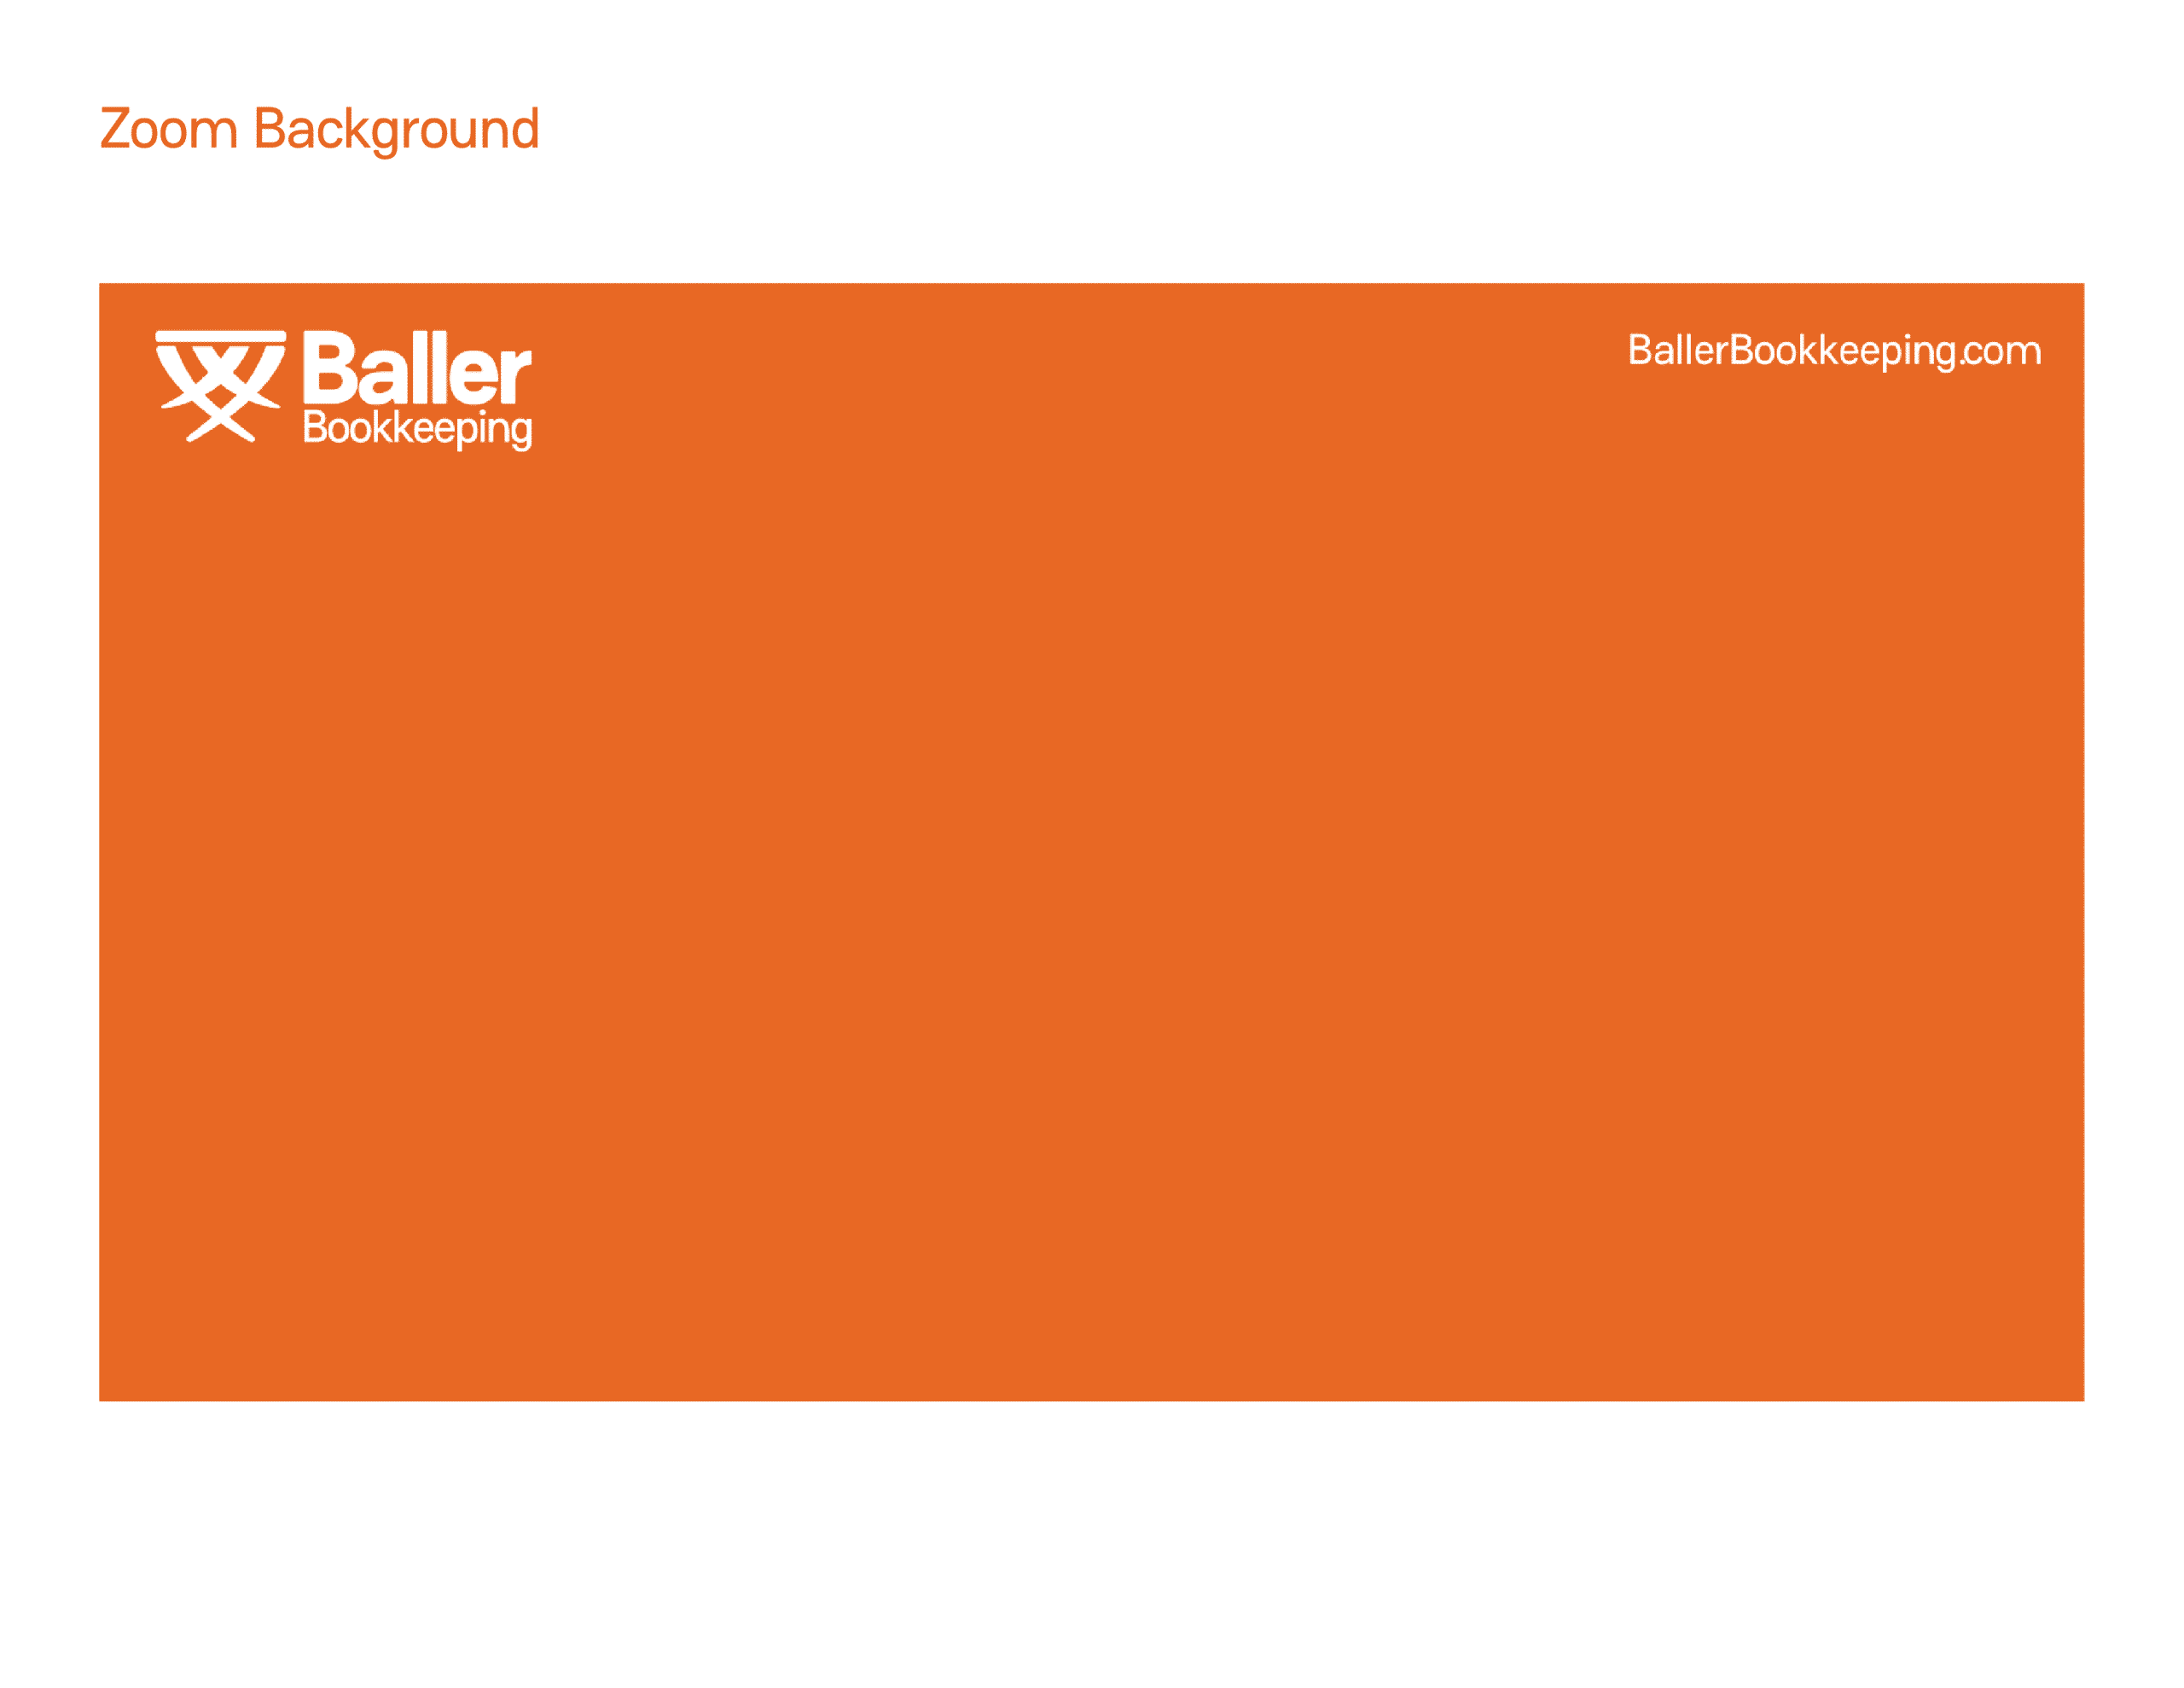 07 - BALLERBK_ZOOM_BACKGROUND